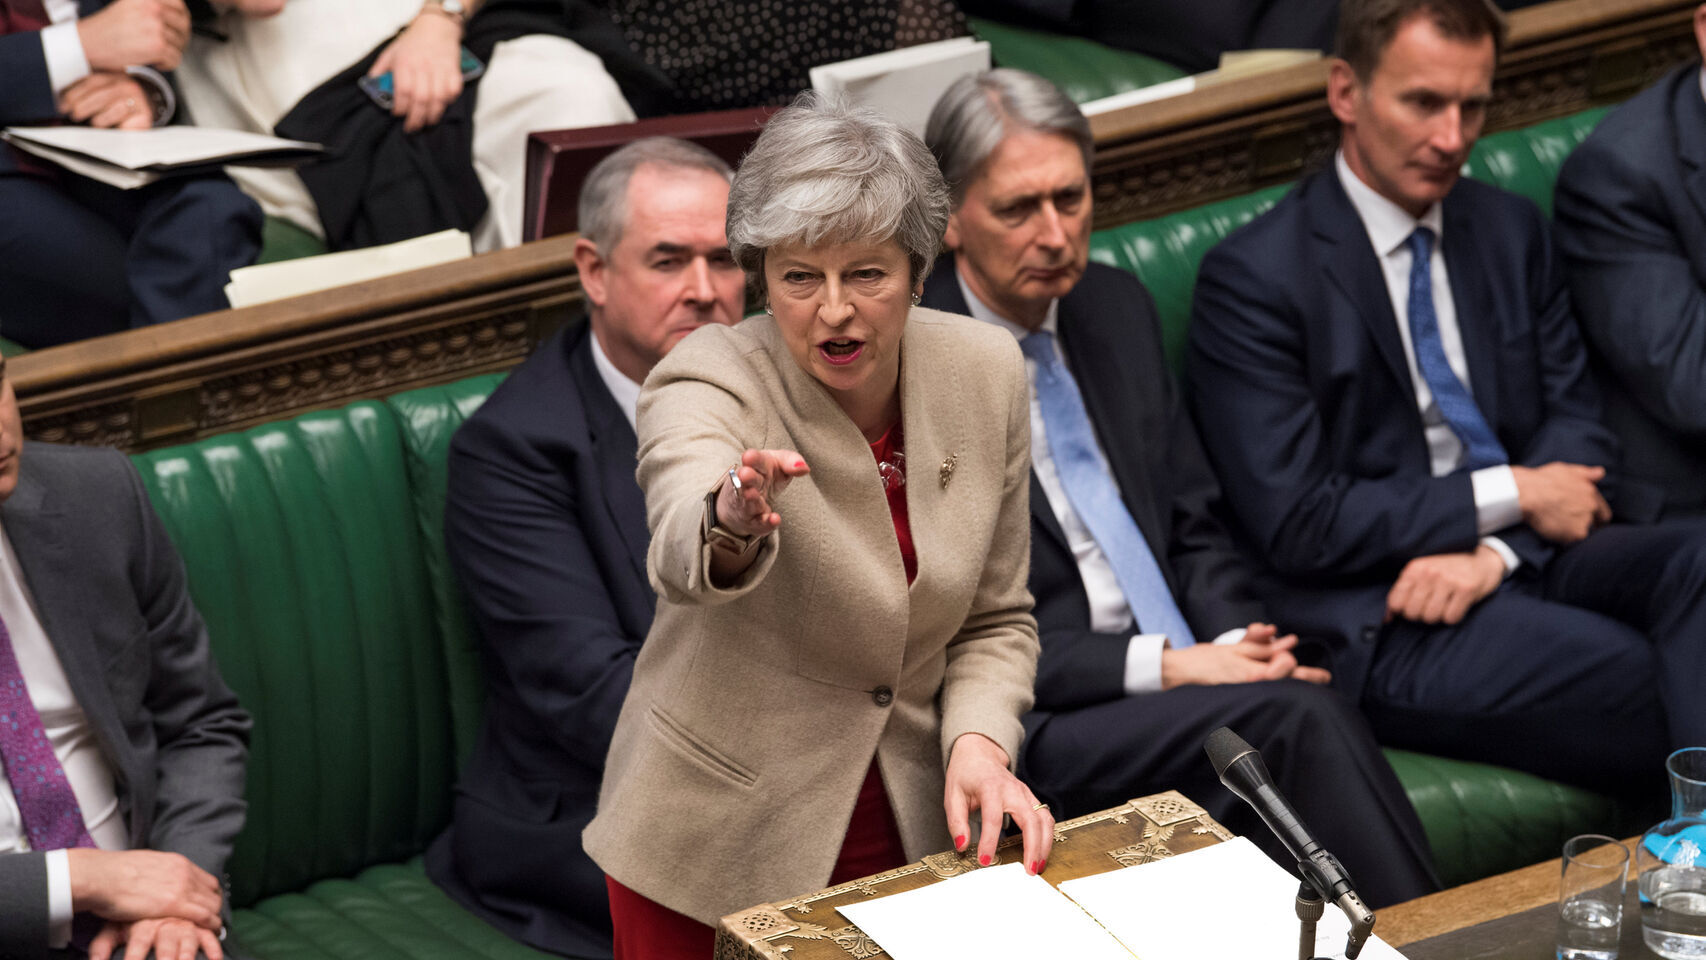 Theresa May en el Parlamento británico.